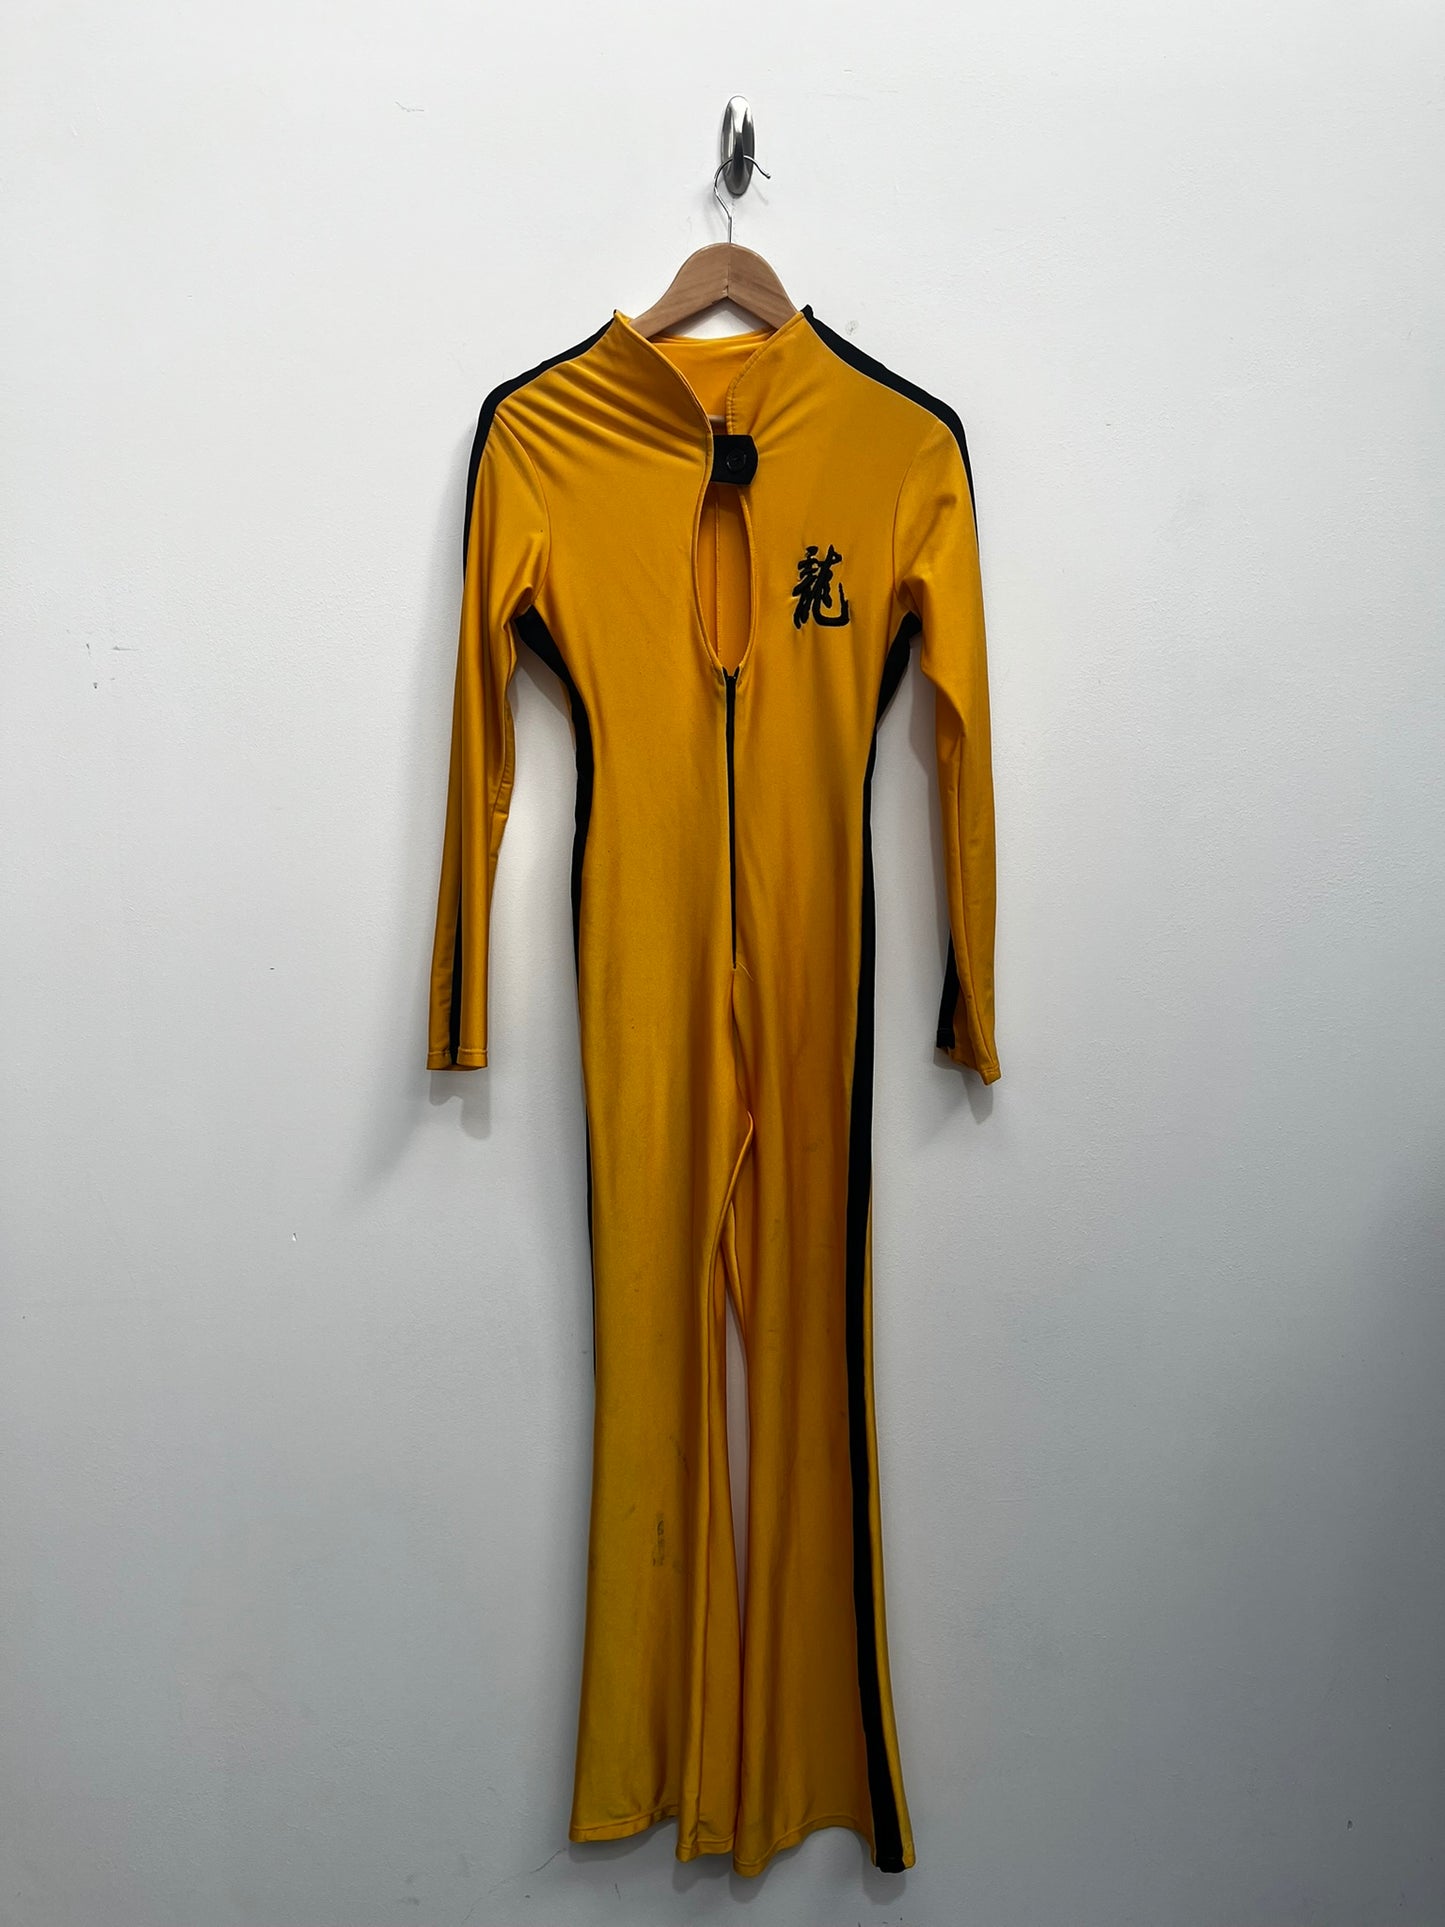 Yellow Kill bill Costume Size Small - Ex Hire